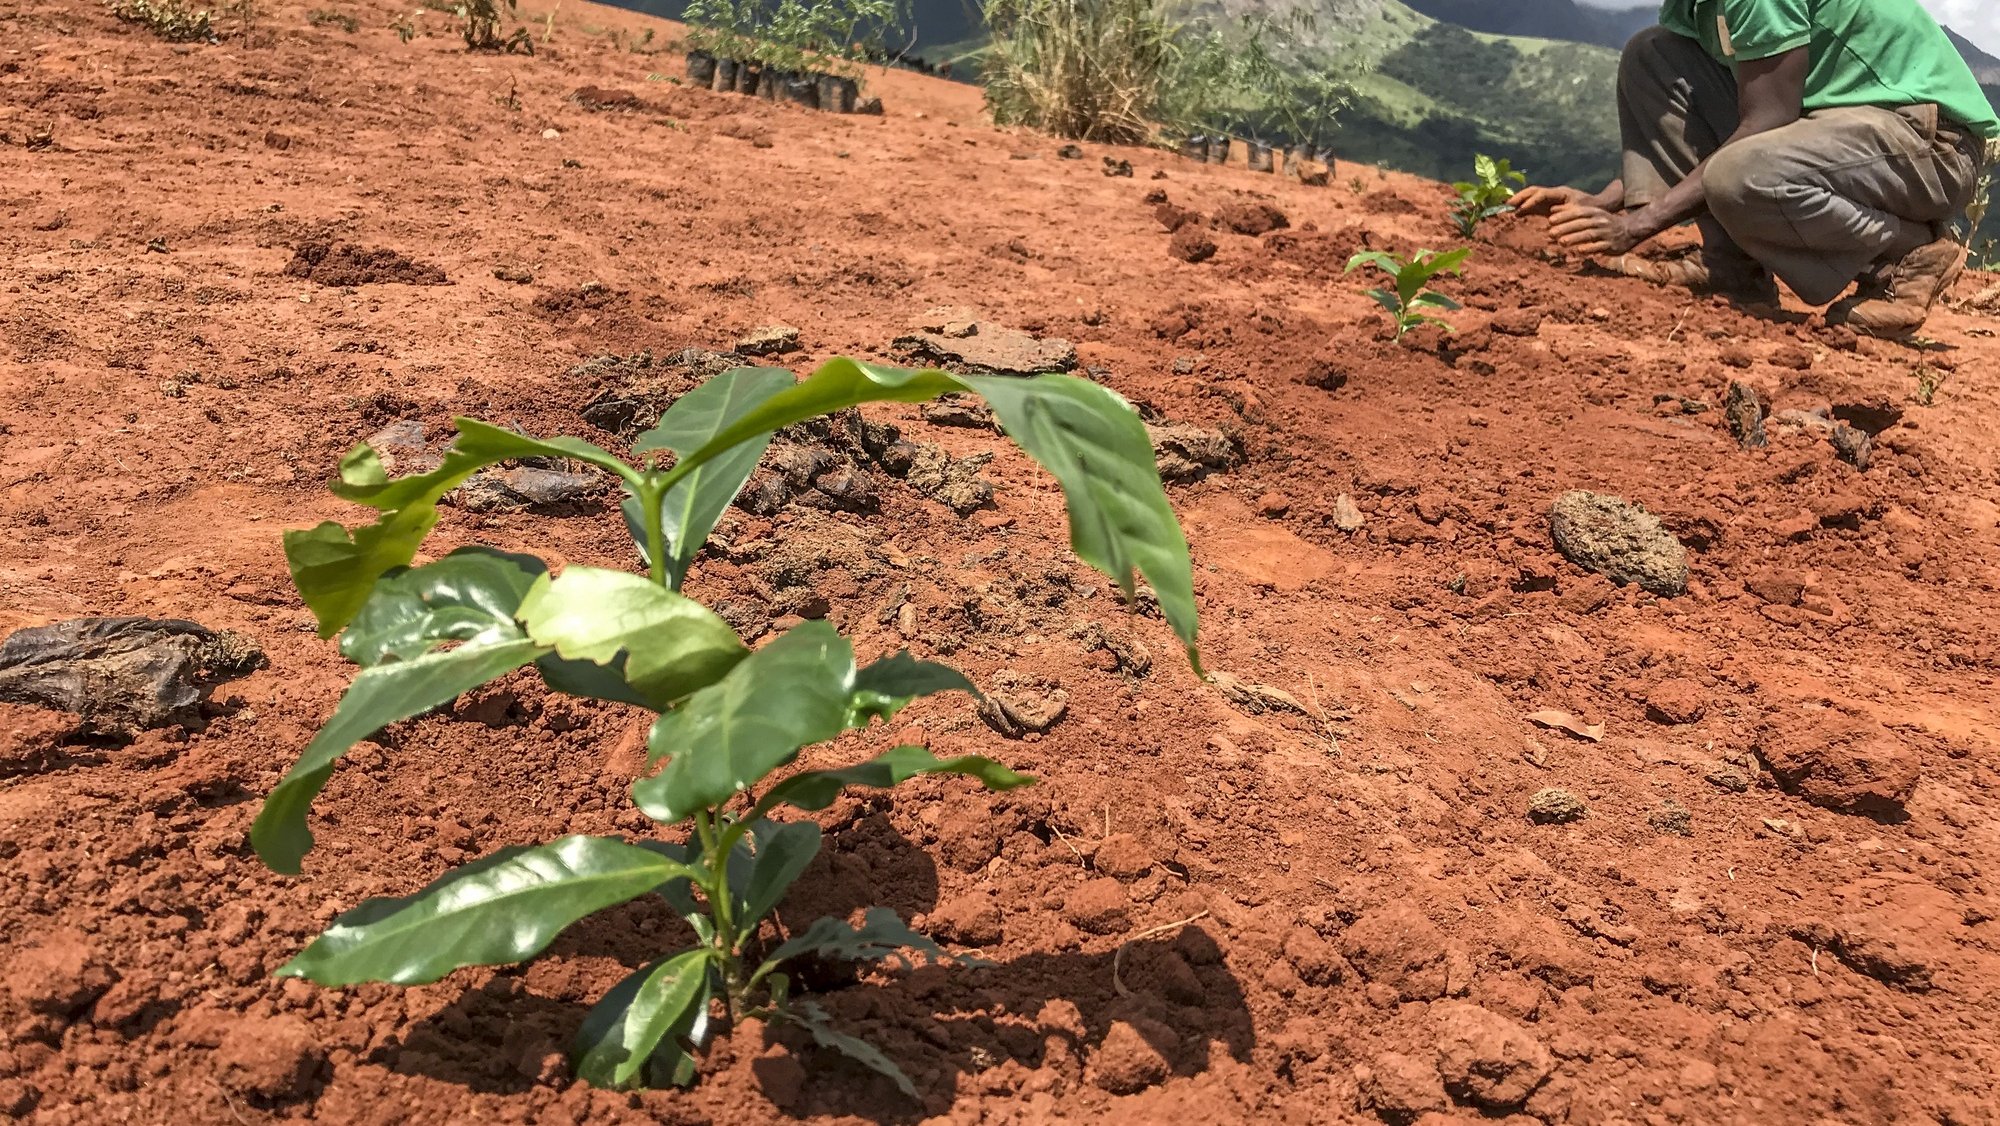 Um camponês planta mudas de café arábica num pasto de gado, que ficou deserto devido às mudanças climáticas, no âmbito do projeto da Agrotur que arrancou em 2020, num campo experimental da zona tampão do Parque Nacional de Chimanimani, no Chimoio, Moçambique, 15 de fevereiro de 2022. Um total de 1.600 camponeses estão envolvidos no plantio de 400 hectares de café orgânico em Chimanimani num projeto agroflorestal que é o maior cafezal de Moçambique. (ACOMPANHA TEXTO DA LUSA DO DIA 22 DE FEVEREIRO DE 2022). ANDRÉ CATUEIRA/LUSA